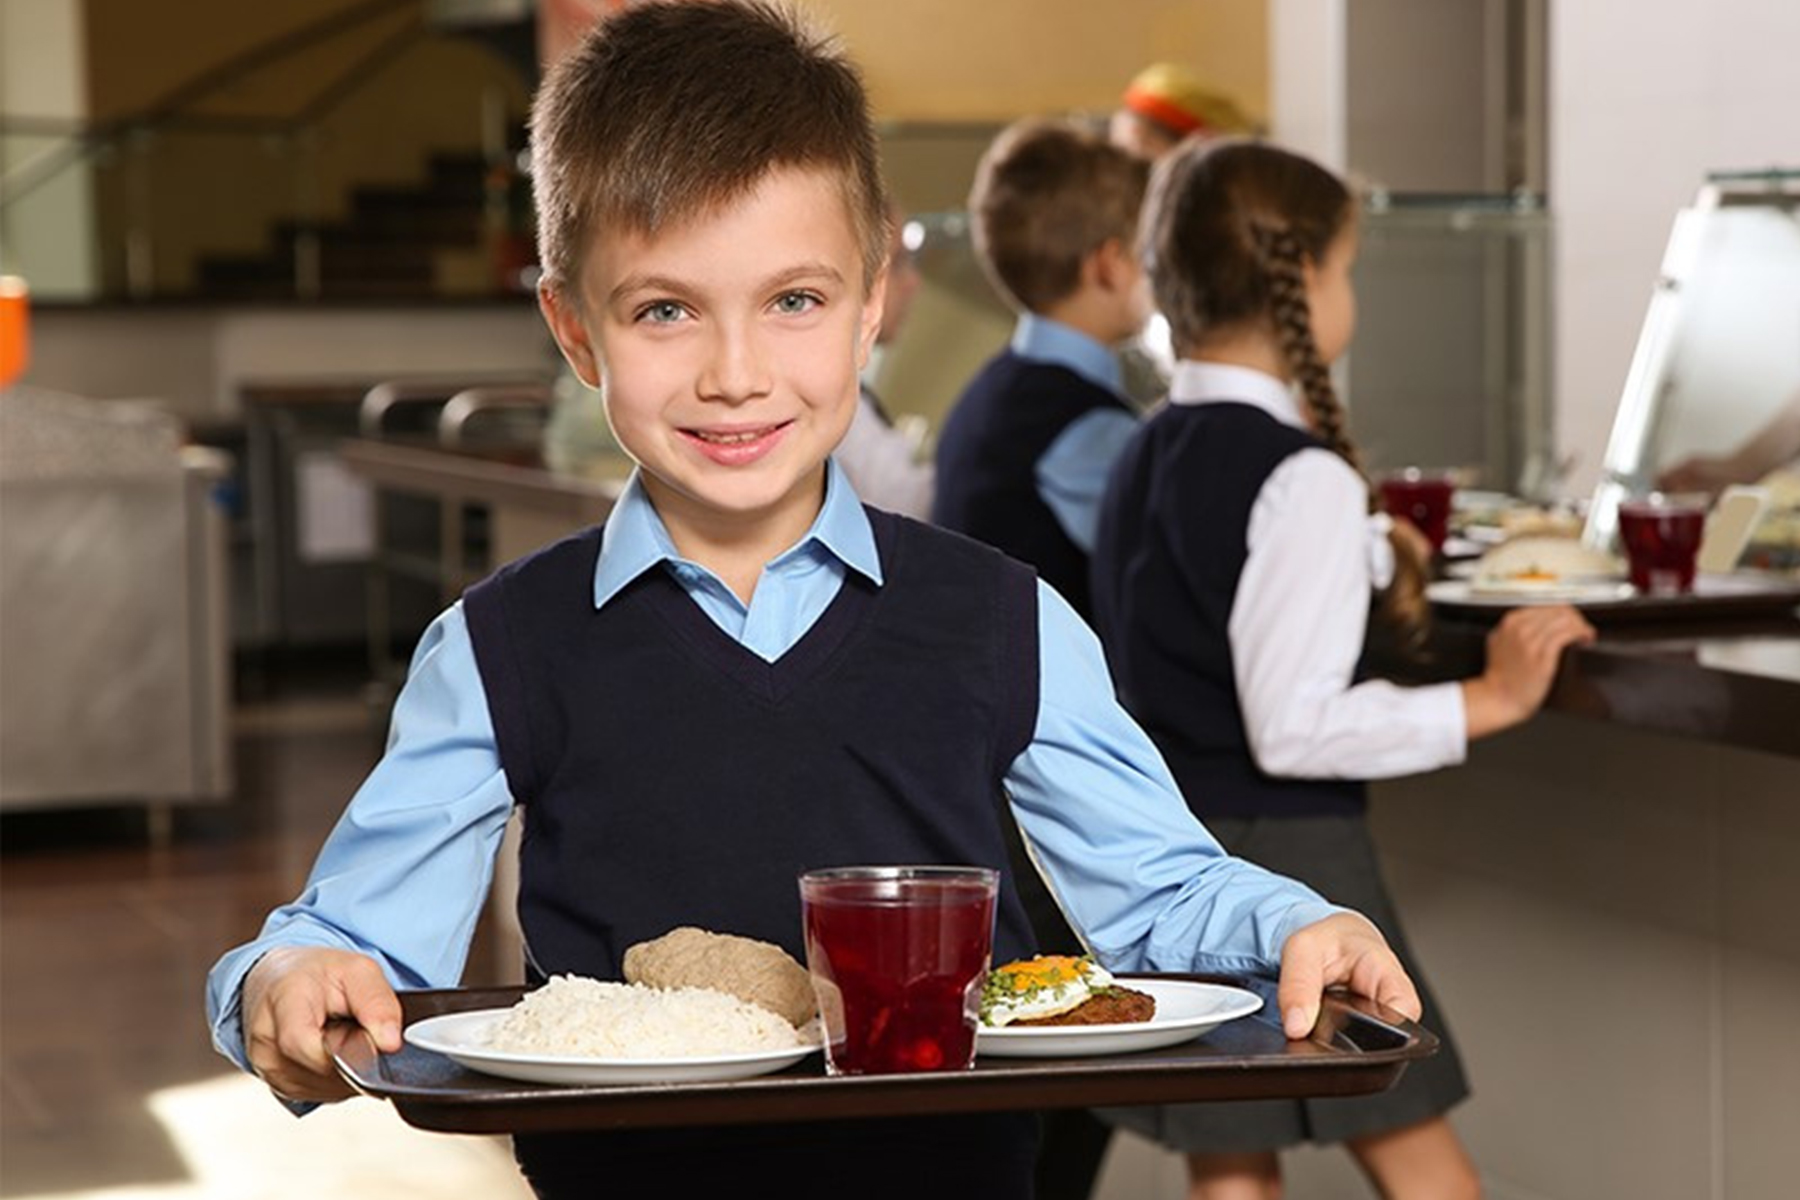 Ребенок овз питание в школе. Обед в школе. Дети в столовой. Питание в школе. Школьники в столовой.